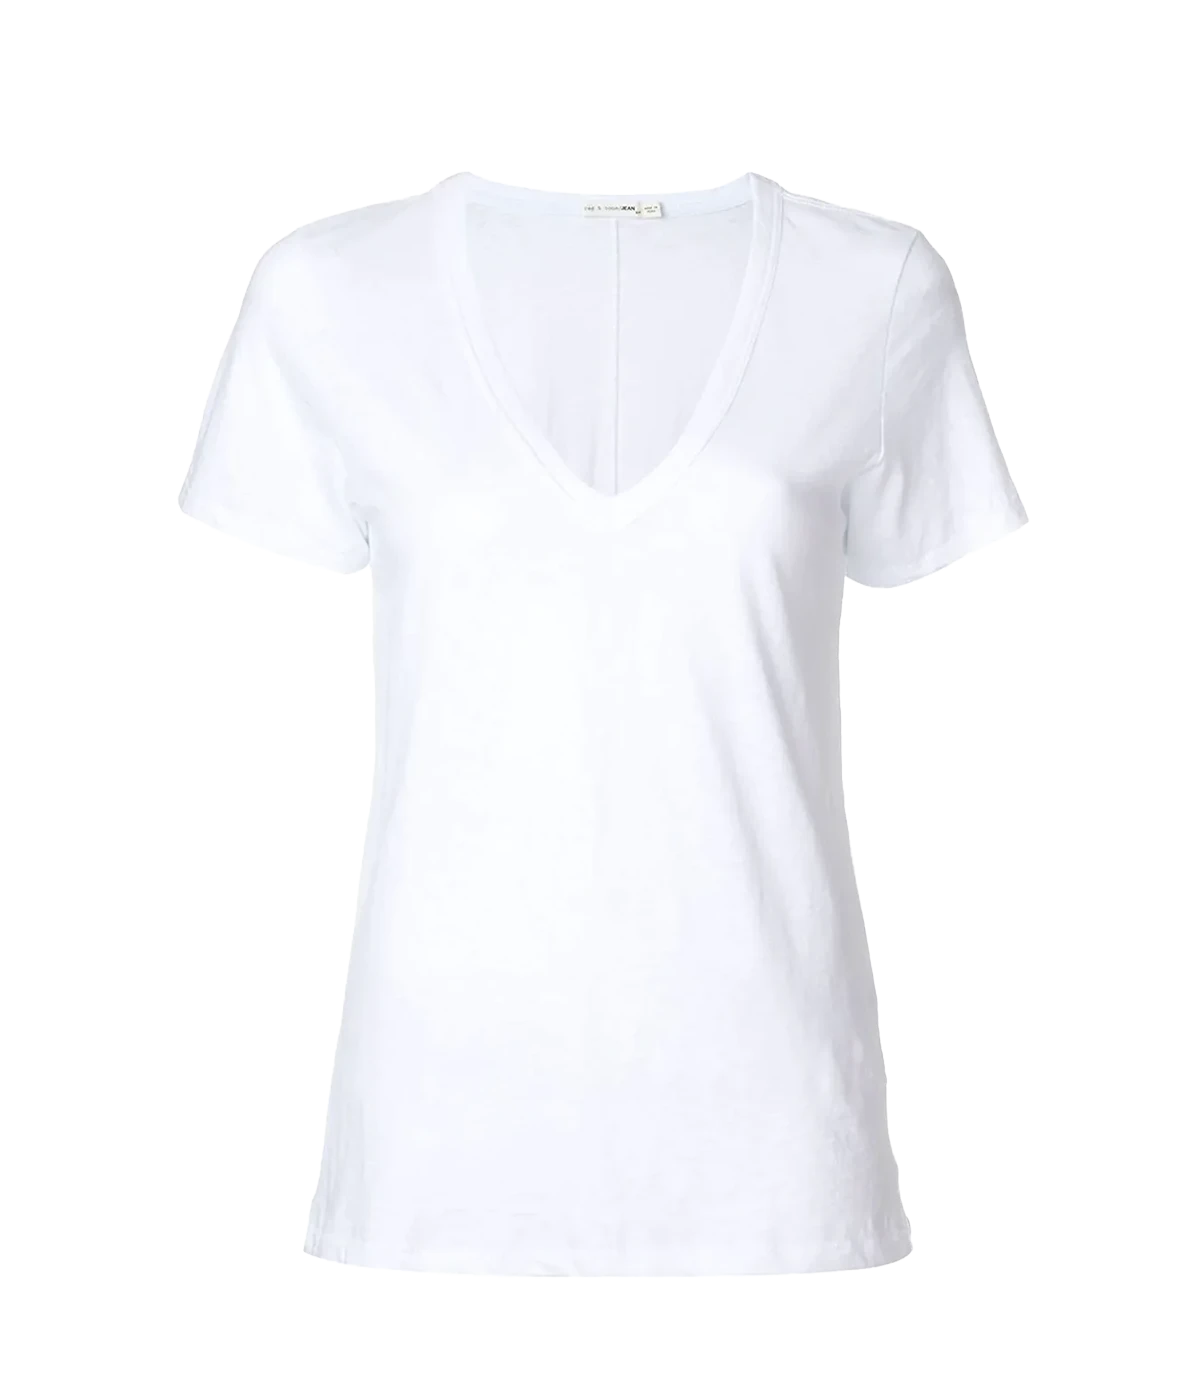 The Slub V T-Shirt in Bright White